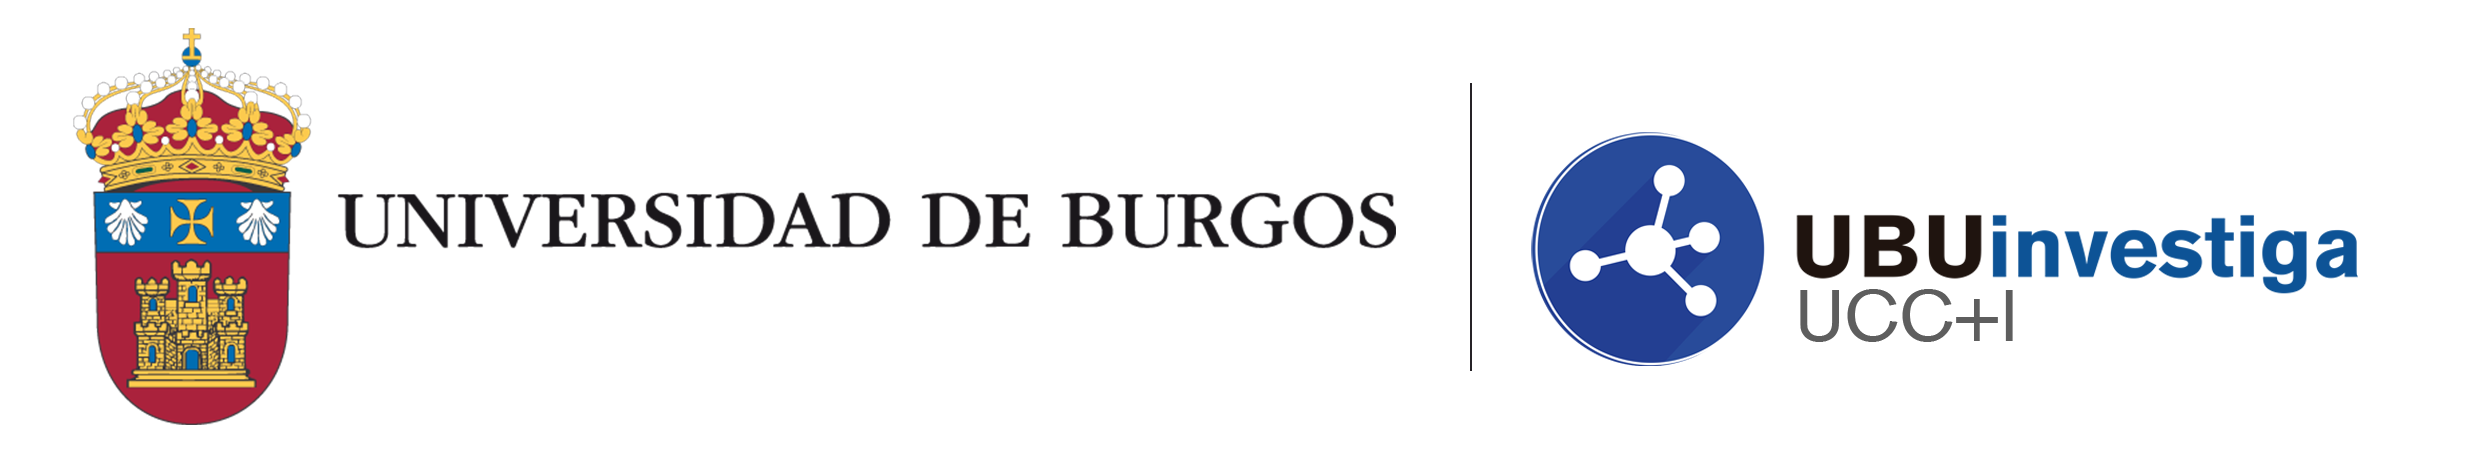 Universidad de Burgos - Unidad de Cultura Científica e Innovación